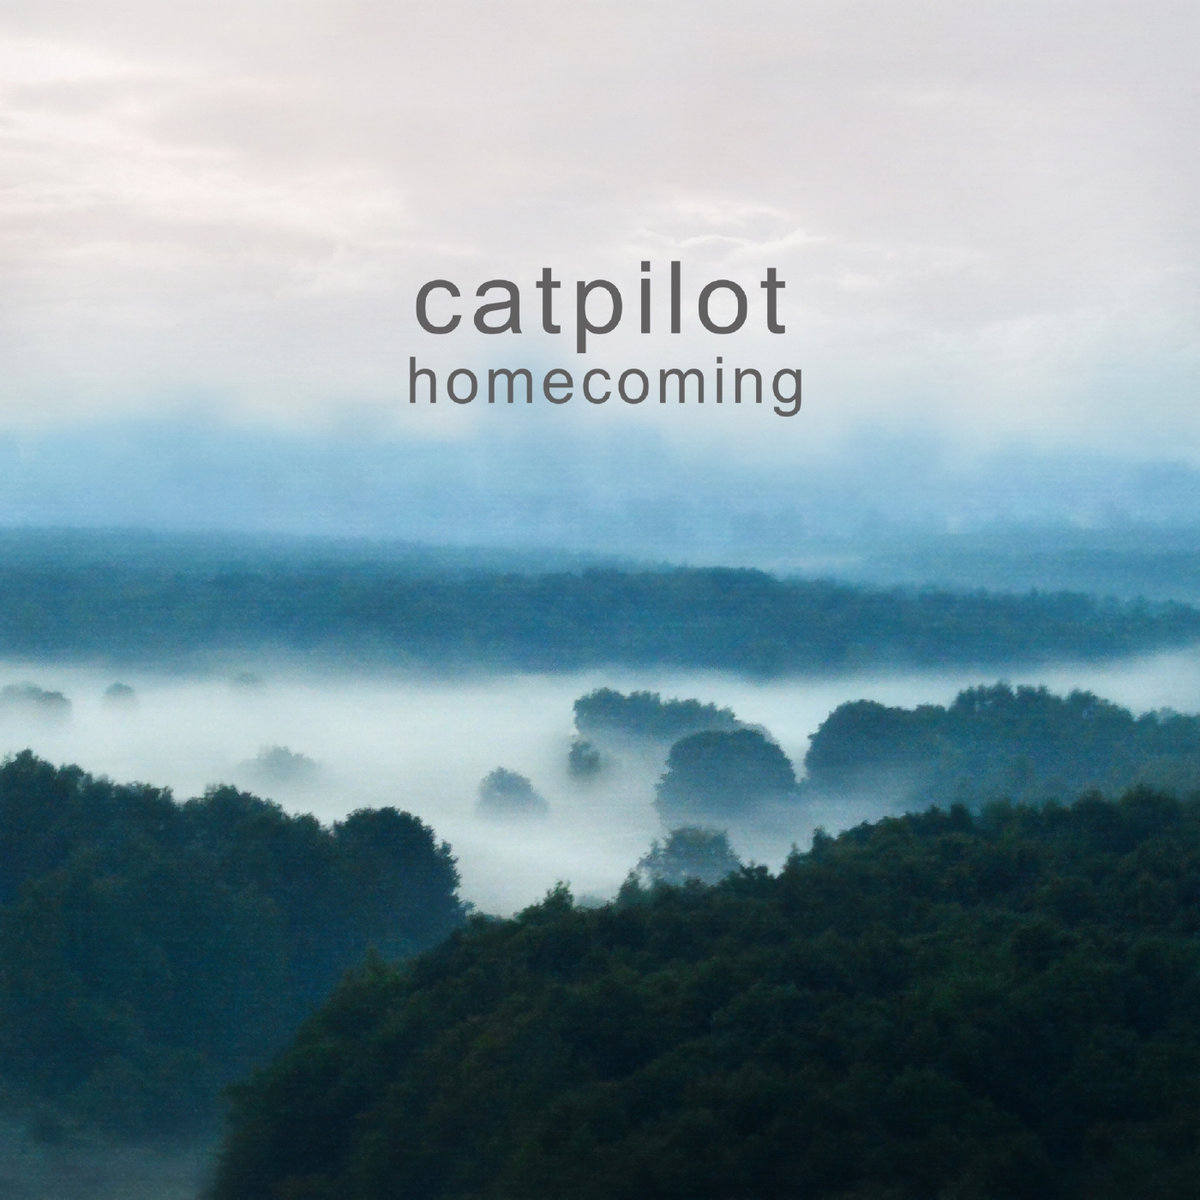 Catpilot - However